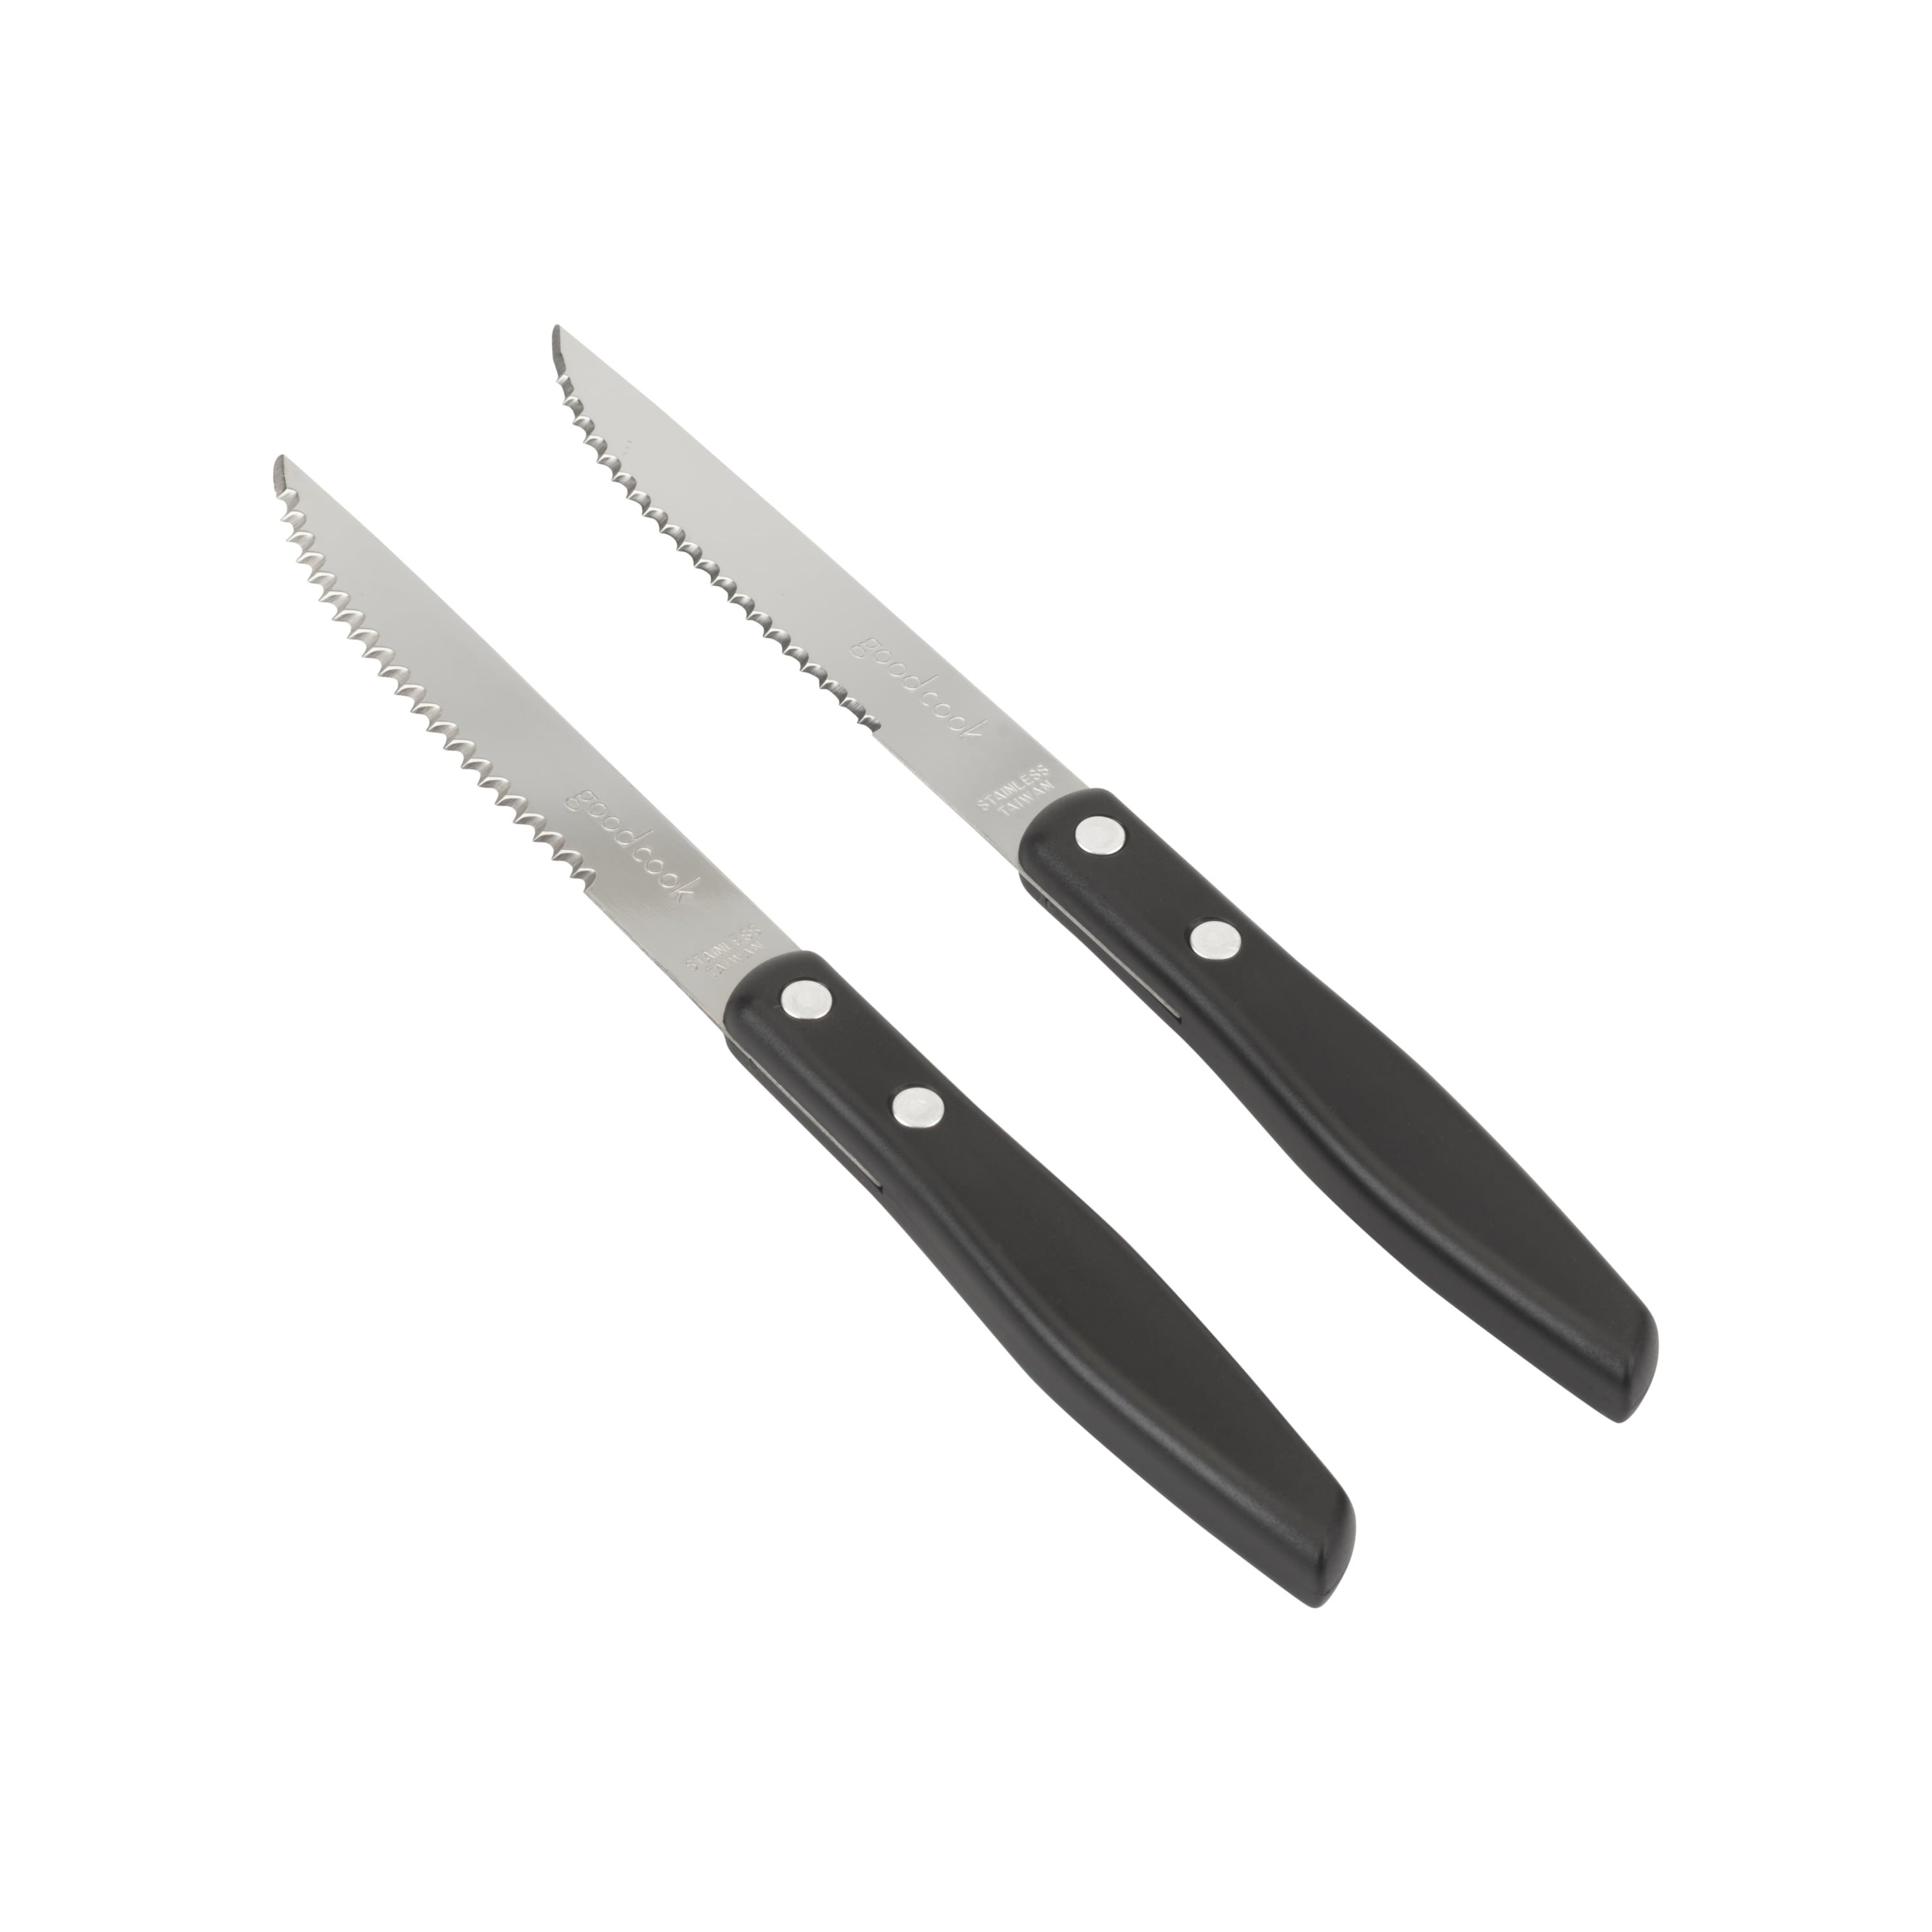  OAKSWARE Steak Knives, Non Serrated Steak Knife Set of